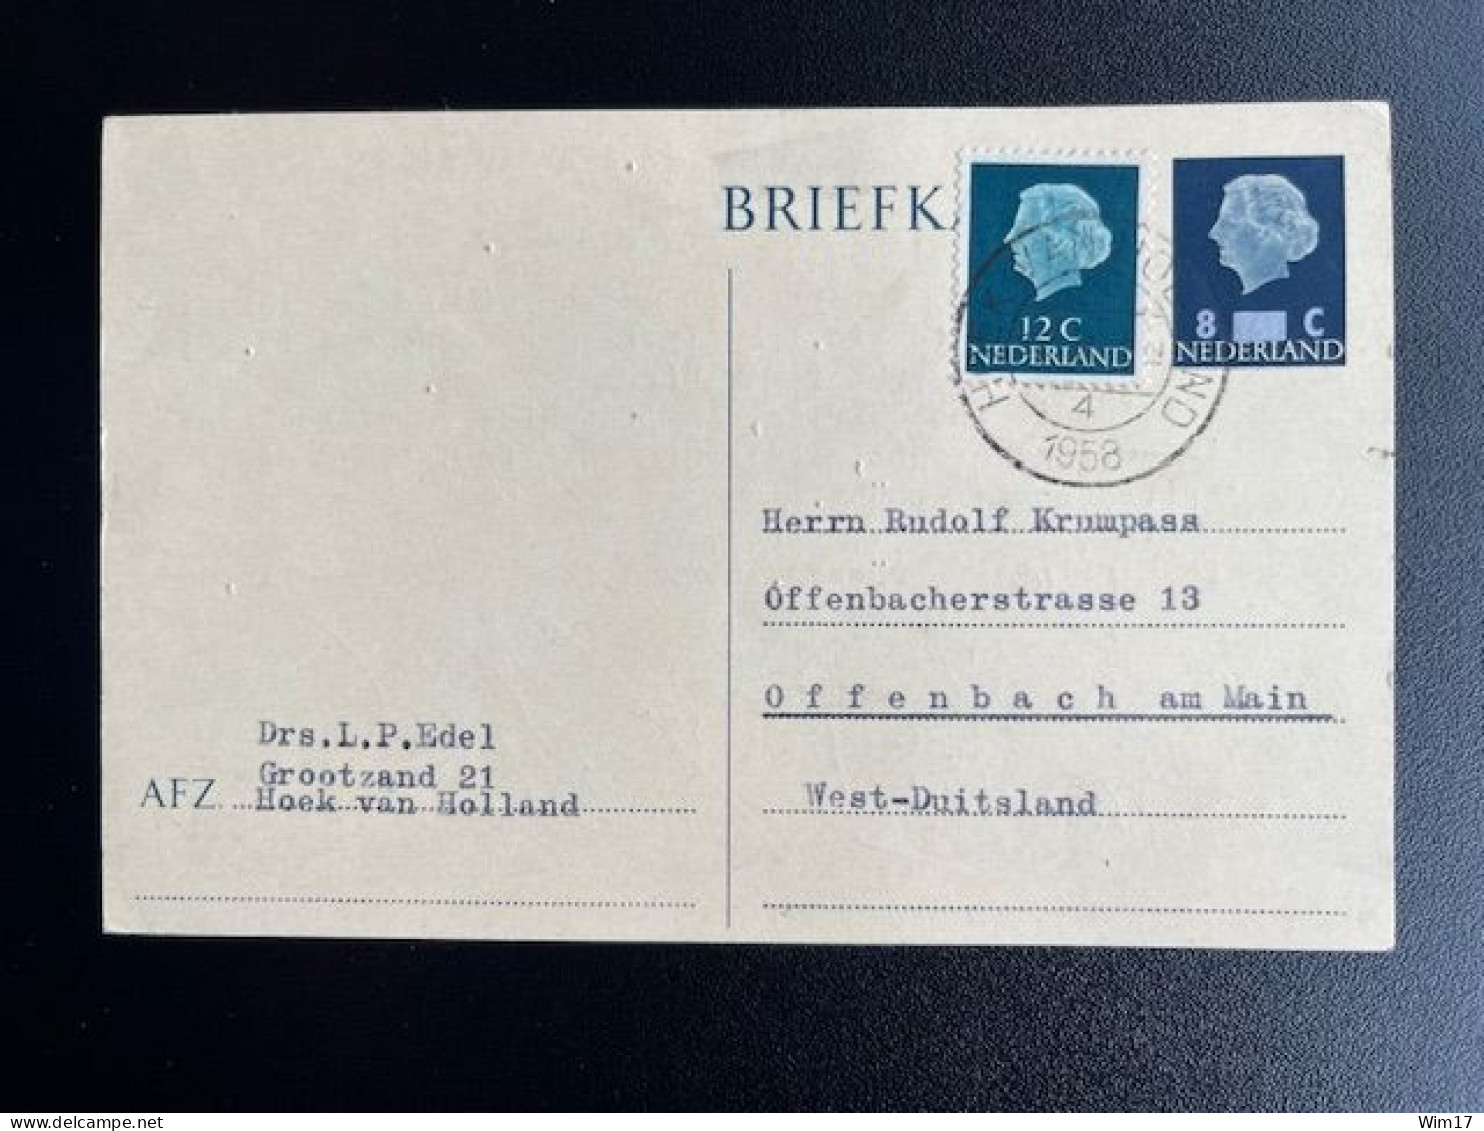 NETHERLANDS 1958 POSTCARD HOEK VAN HOLLAND TO OFFENBACH NEDERLAND - Postal Stationery